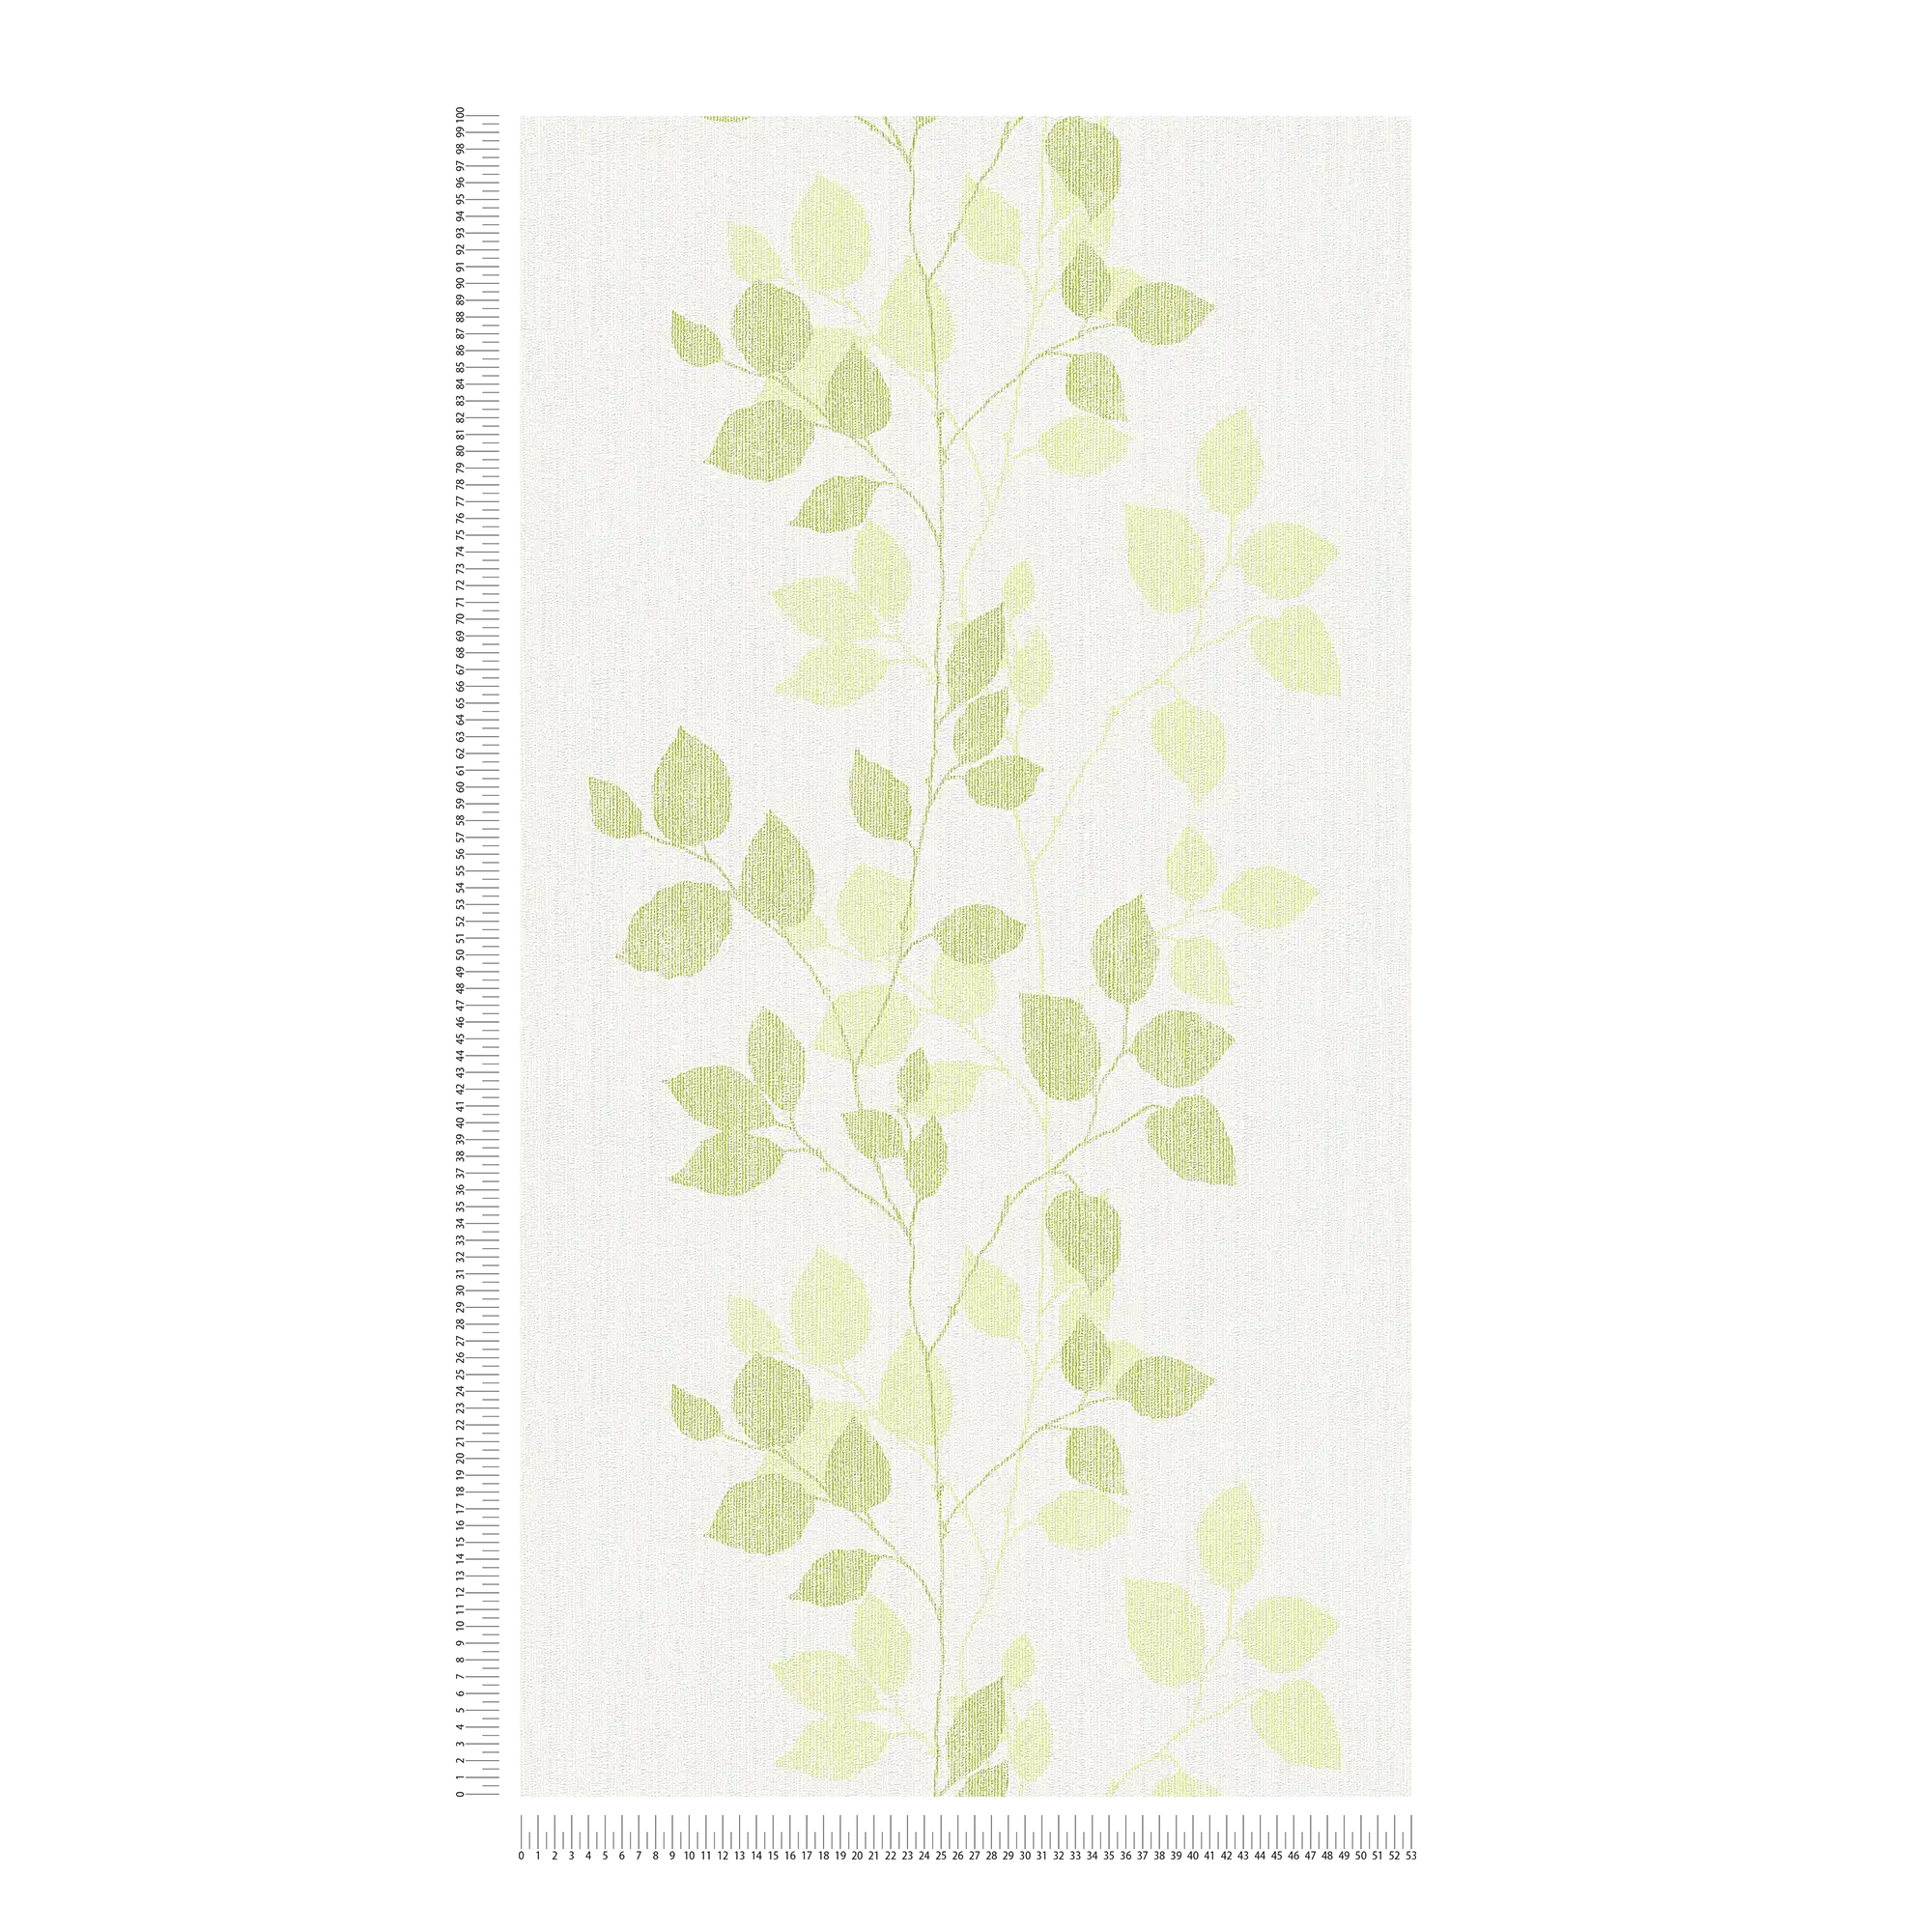             Patroonbehang bladeren in lentekleuren - groen, wit
        